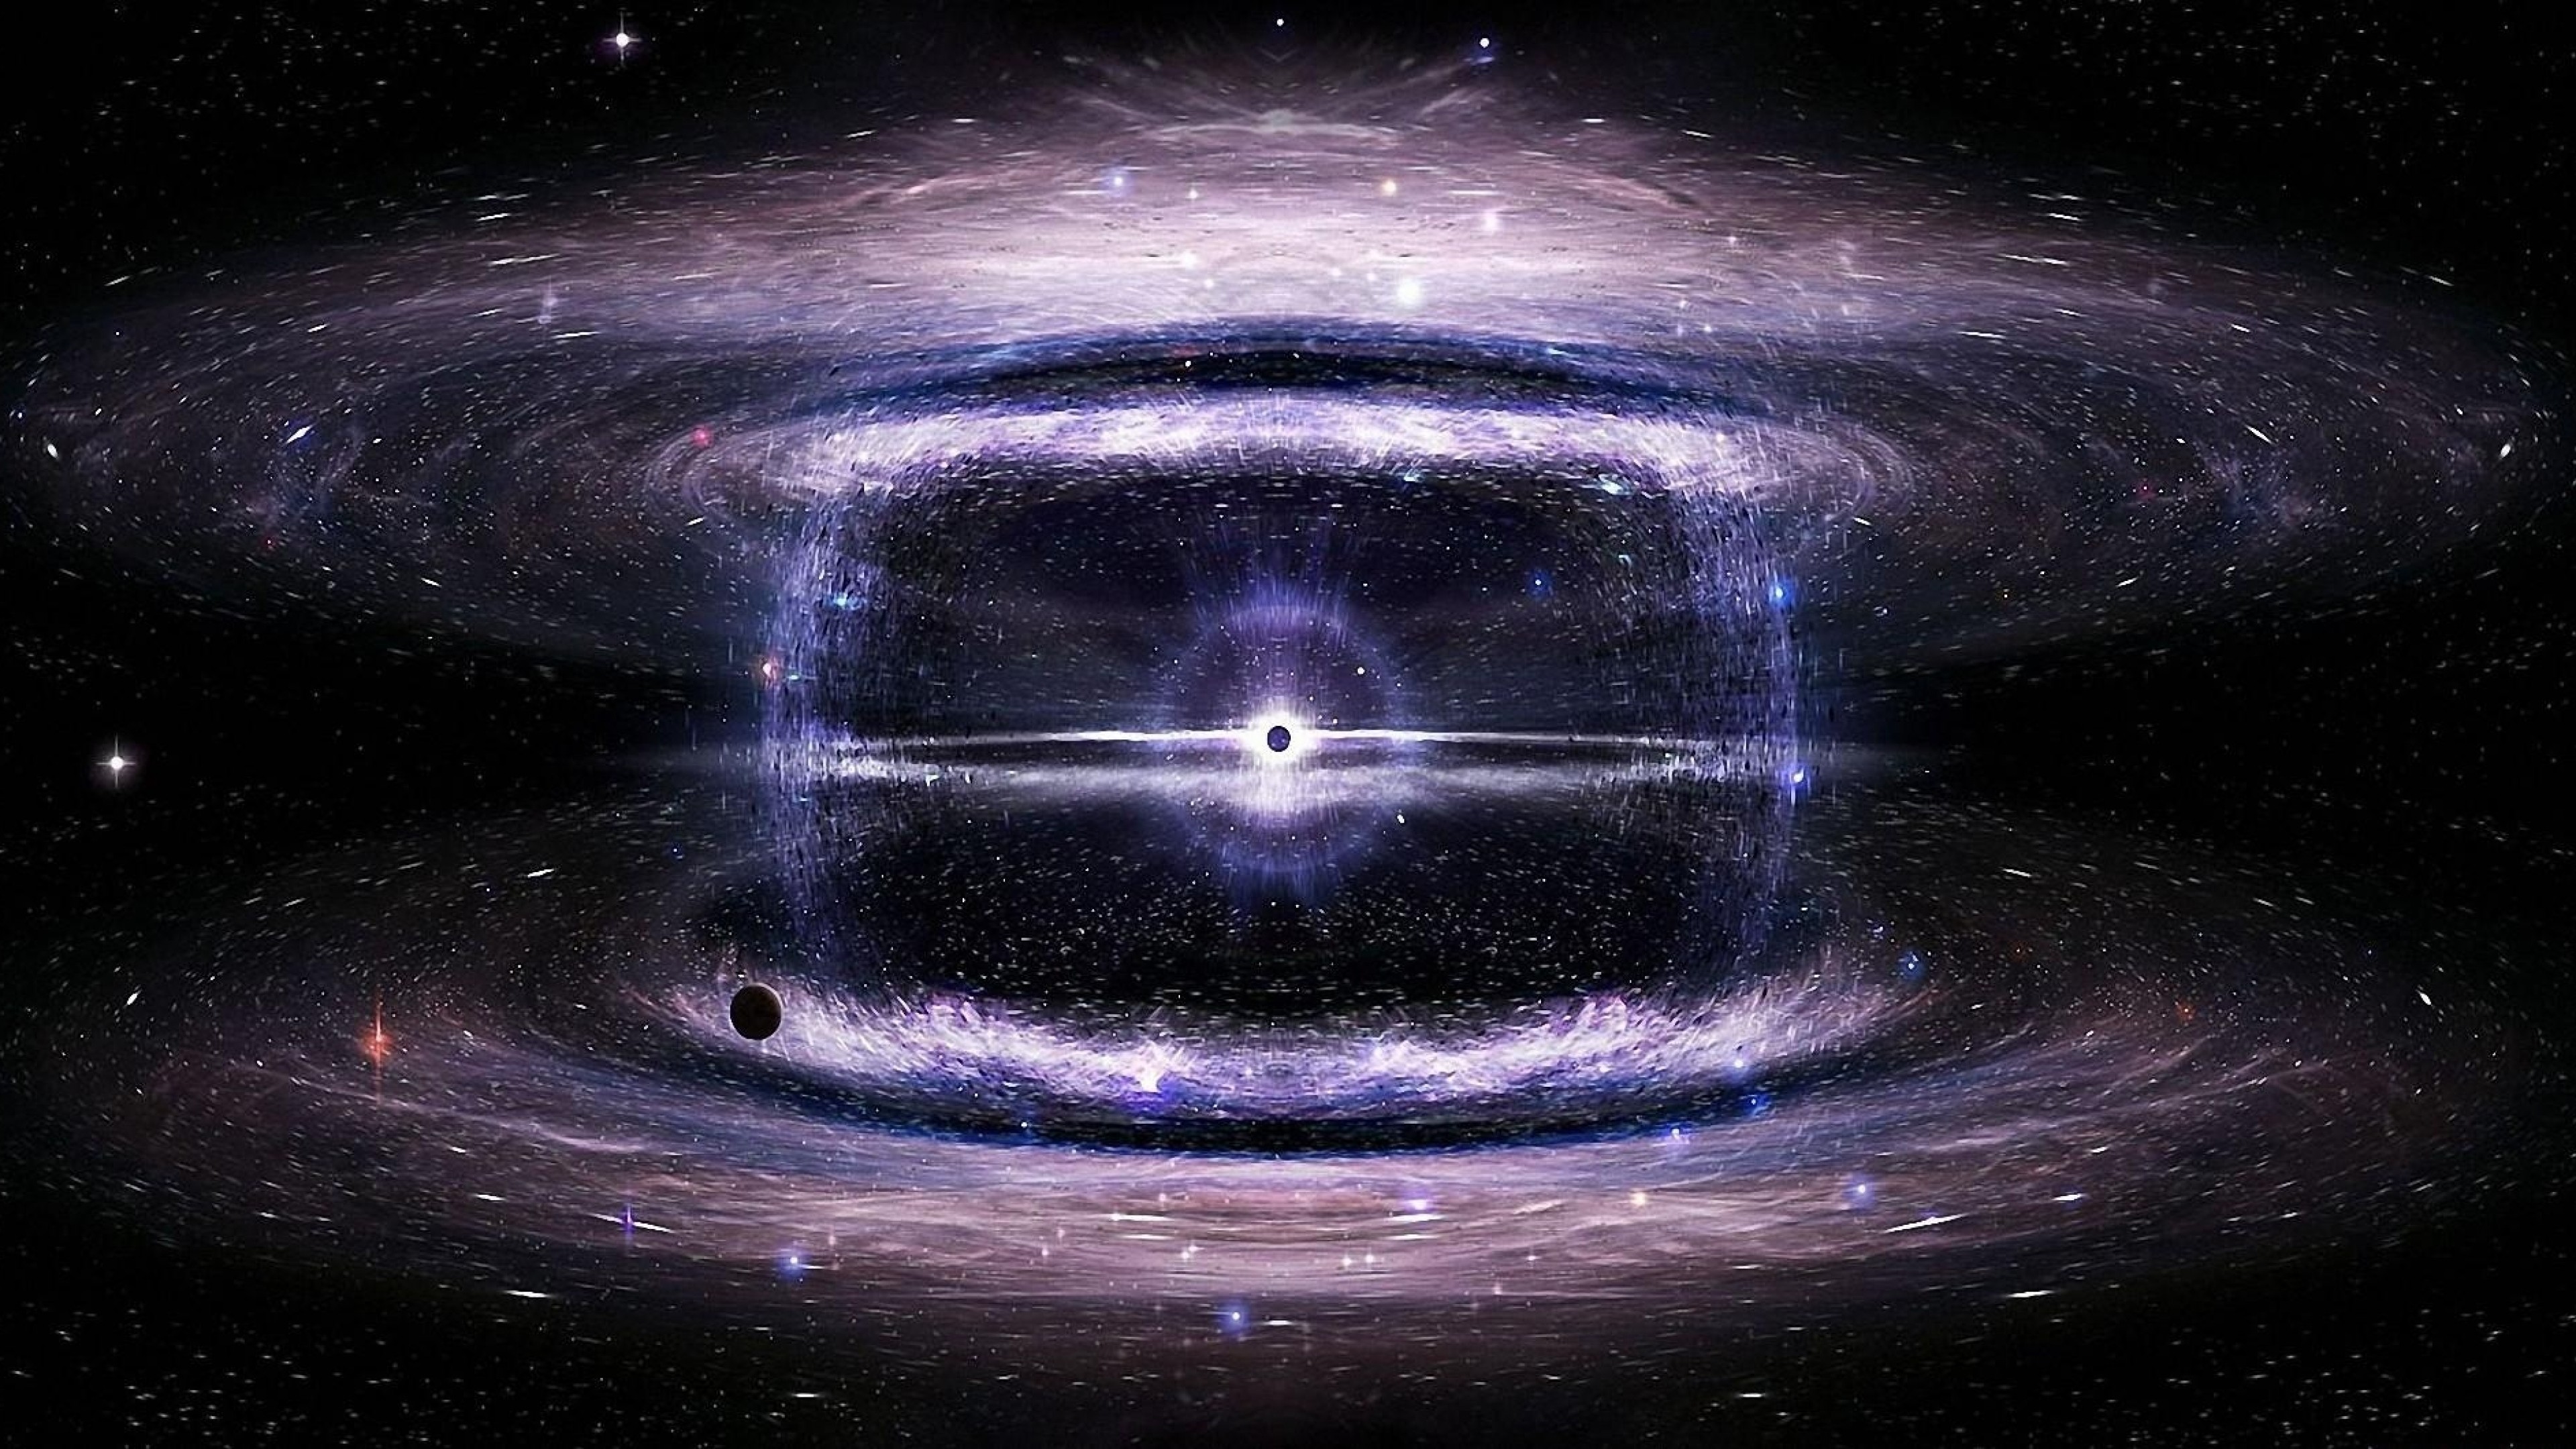 Trải nghiệm độ phân giải 4K tuyệt vời nhất của vũ trụ. Cùng đắm chìm vào vô vàn chòm sao, hố đen và ngôi sao sáng chói. Hình ảnh sống động, sắc nét, đẹp đến khó tin sẽ khiến bạn cảm thấy như đang được đắm chìm vào vũ trụ thật sự!